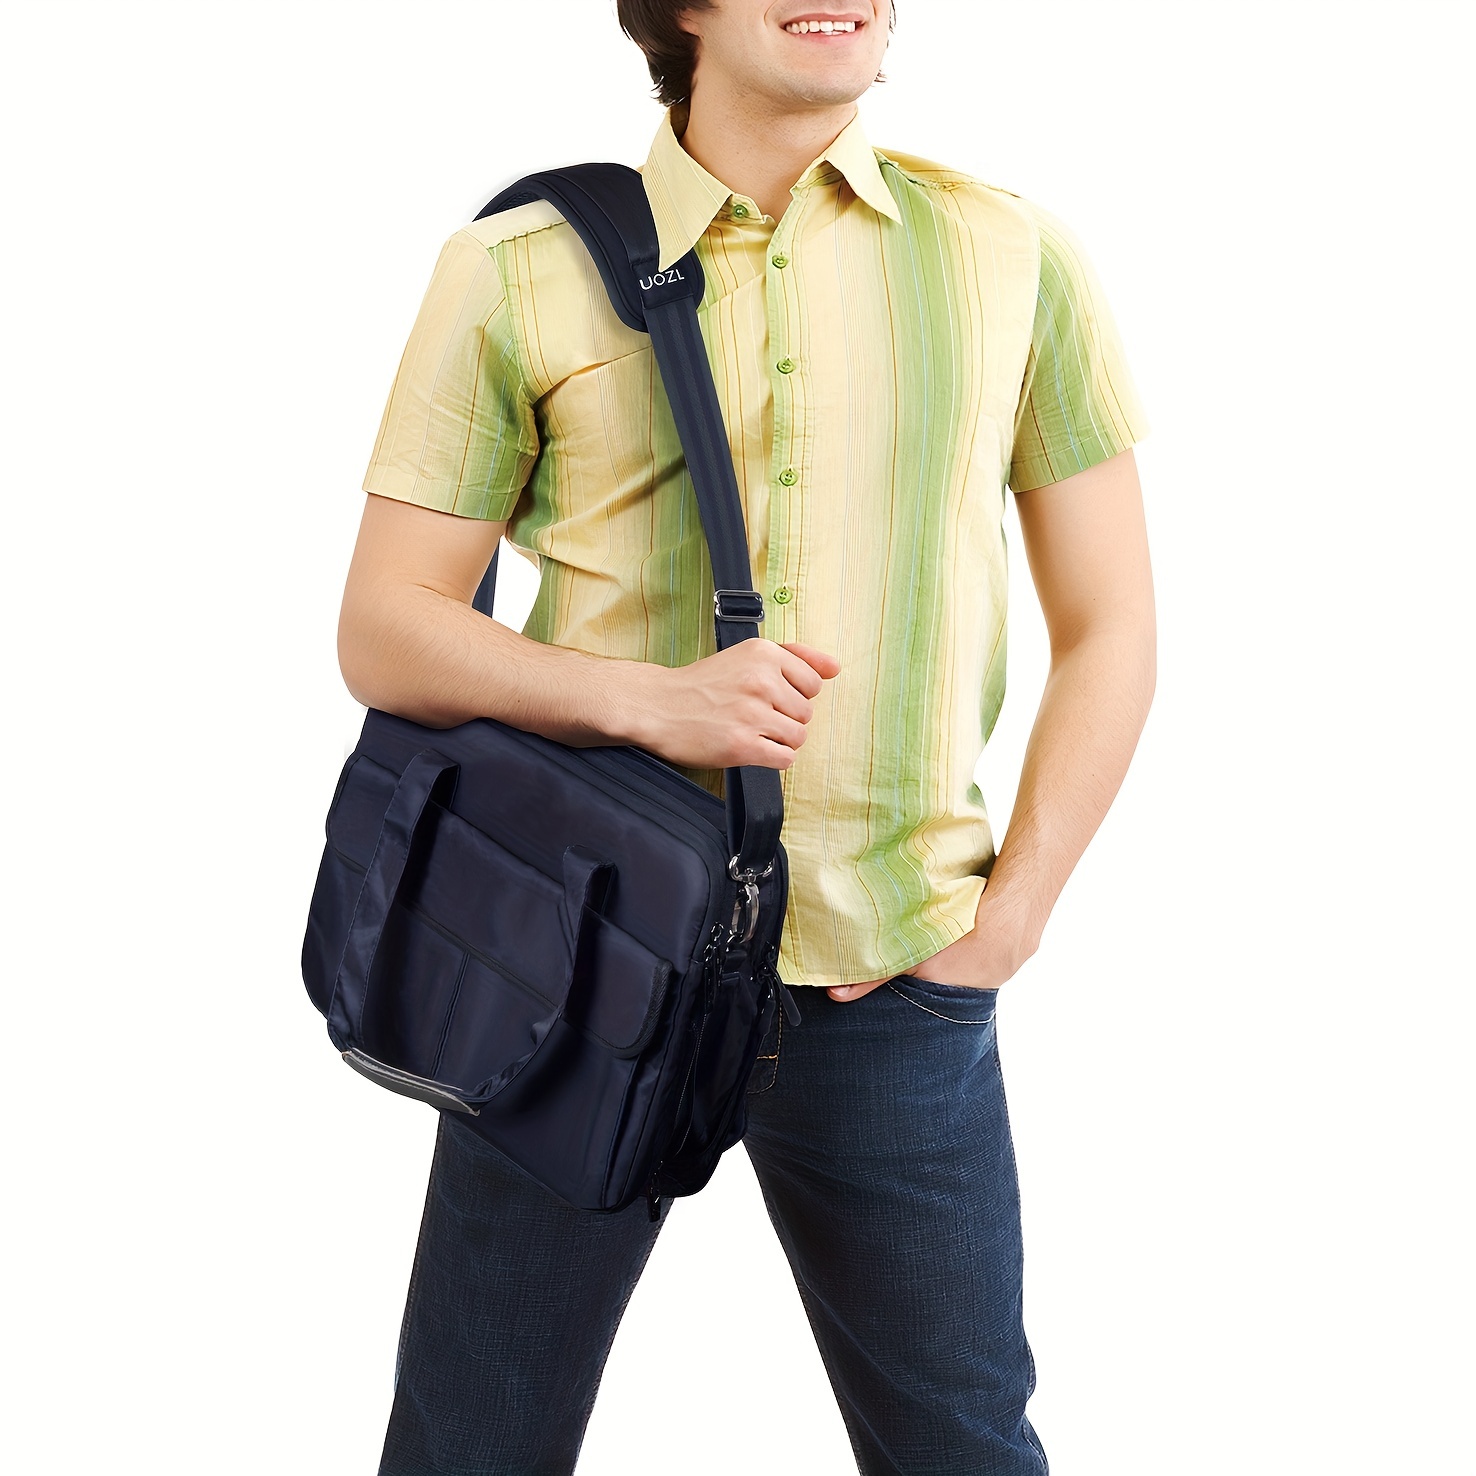 Bag Shoulder Strap, ZINZ Padded Adjustable Shoulder Strap Replacement